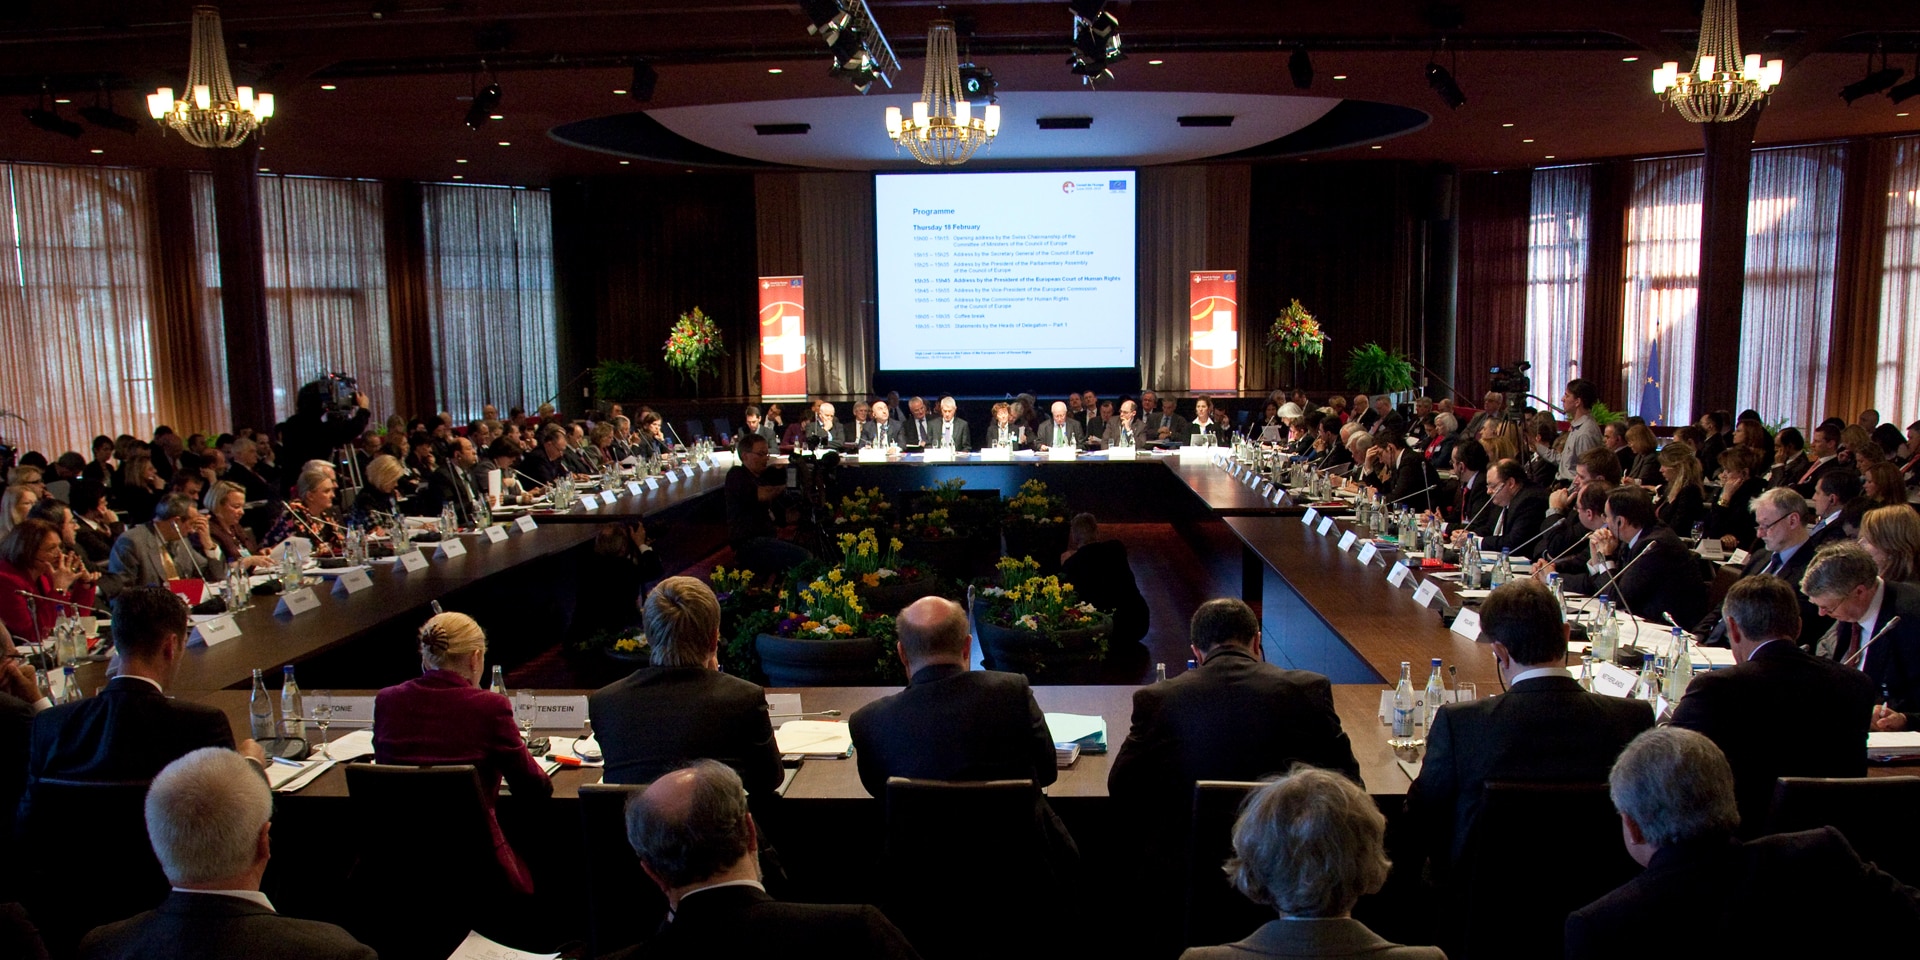 La foto è stata scattata alla Conferenza ministeriale del Consiglio d'Europa nel febbraio 2010 a Interlaken: mostra una sala piena di partecipanti.